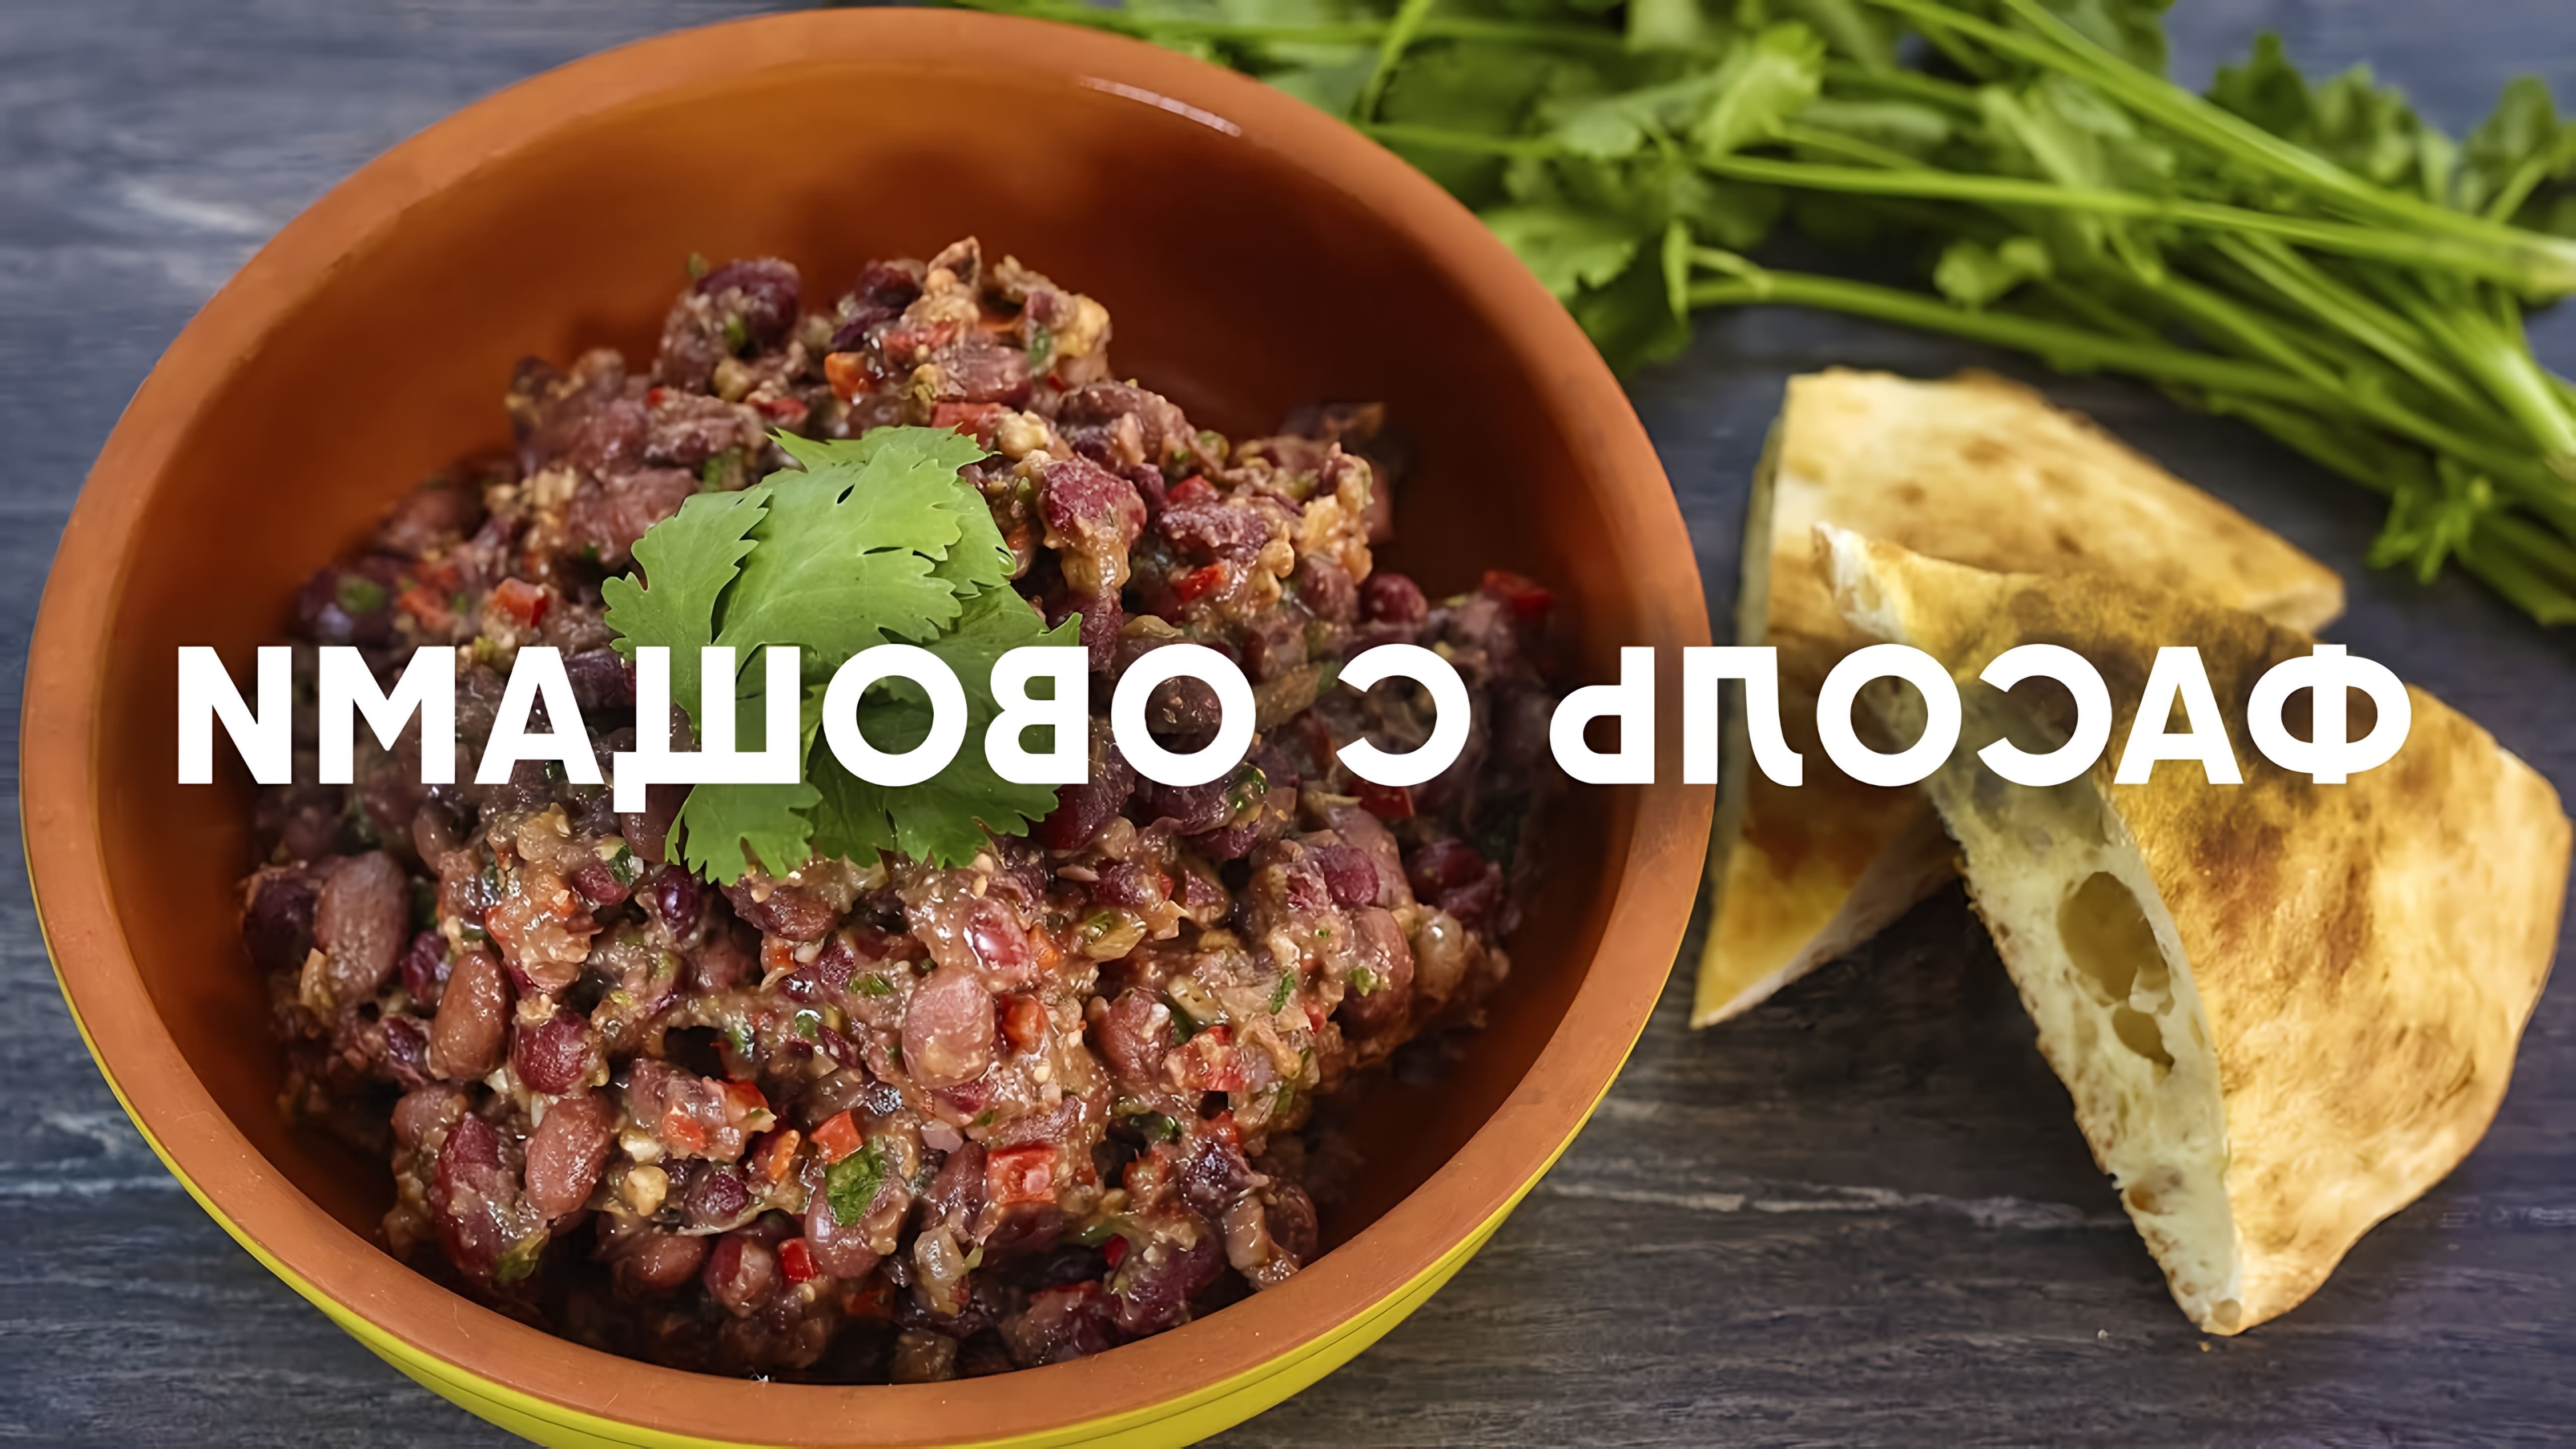 Лобио - традиционное грузинское блюдо из красной фасоли, овощей, специй и трав